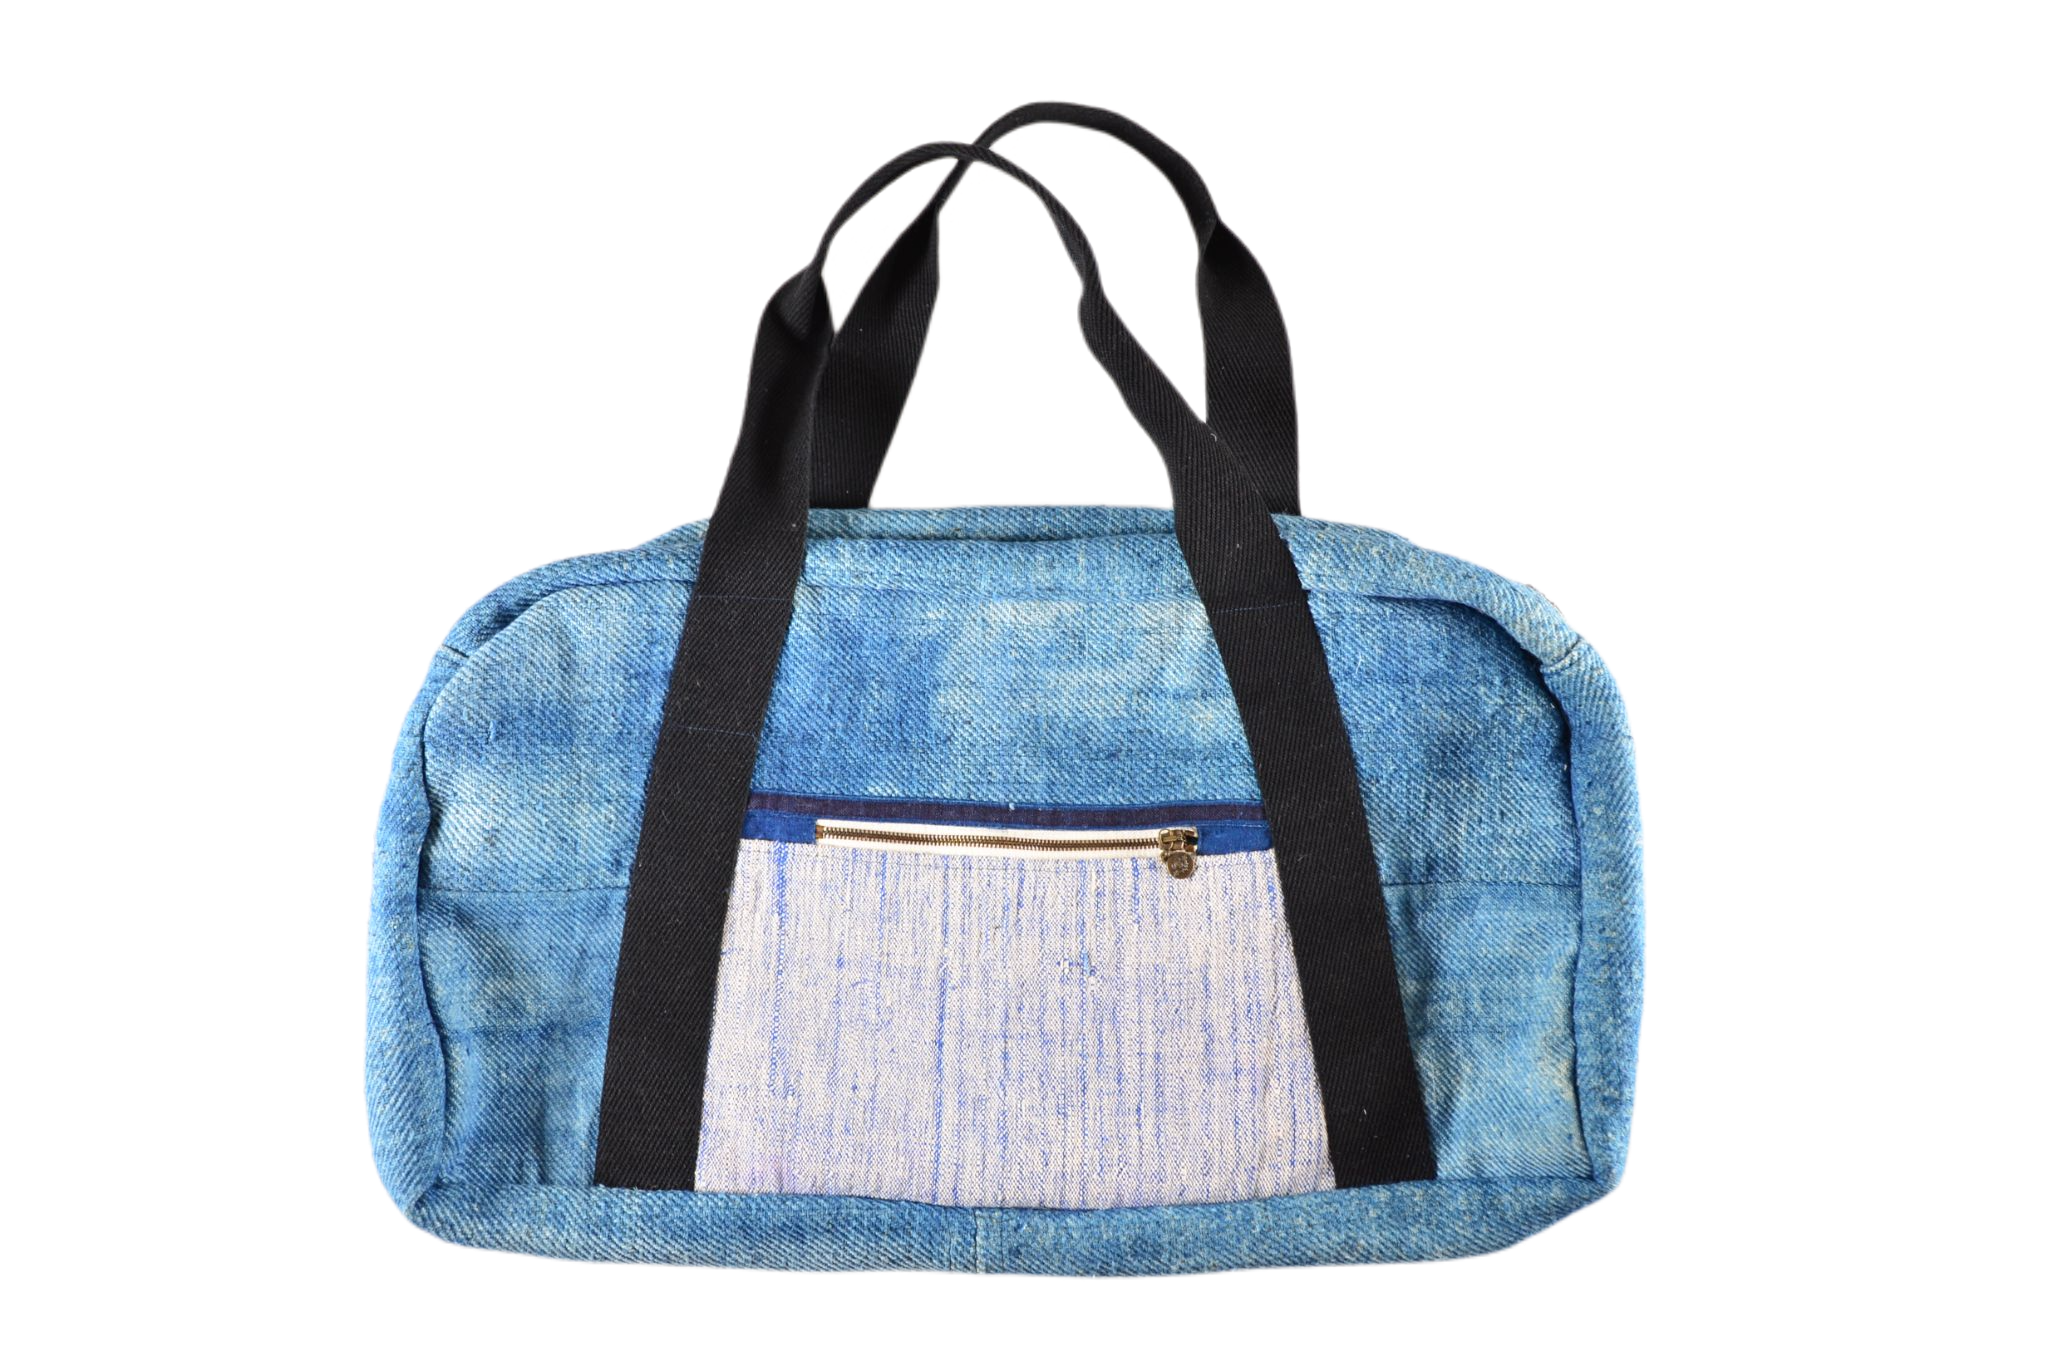 Bag: Handwoven hemp from antique grain sack - BG232